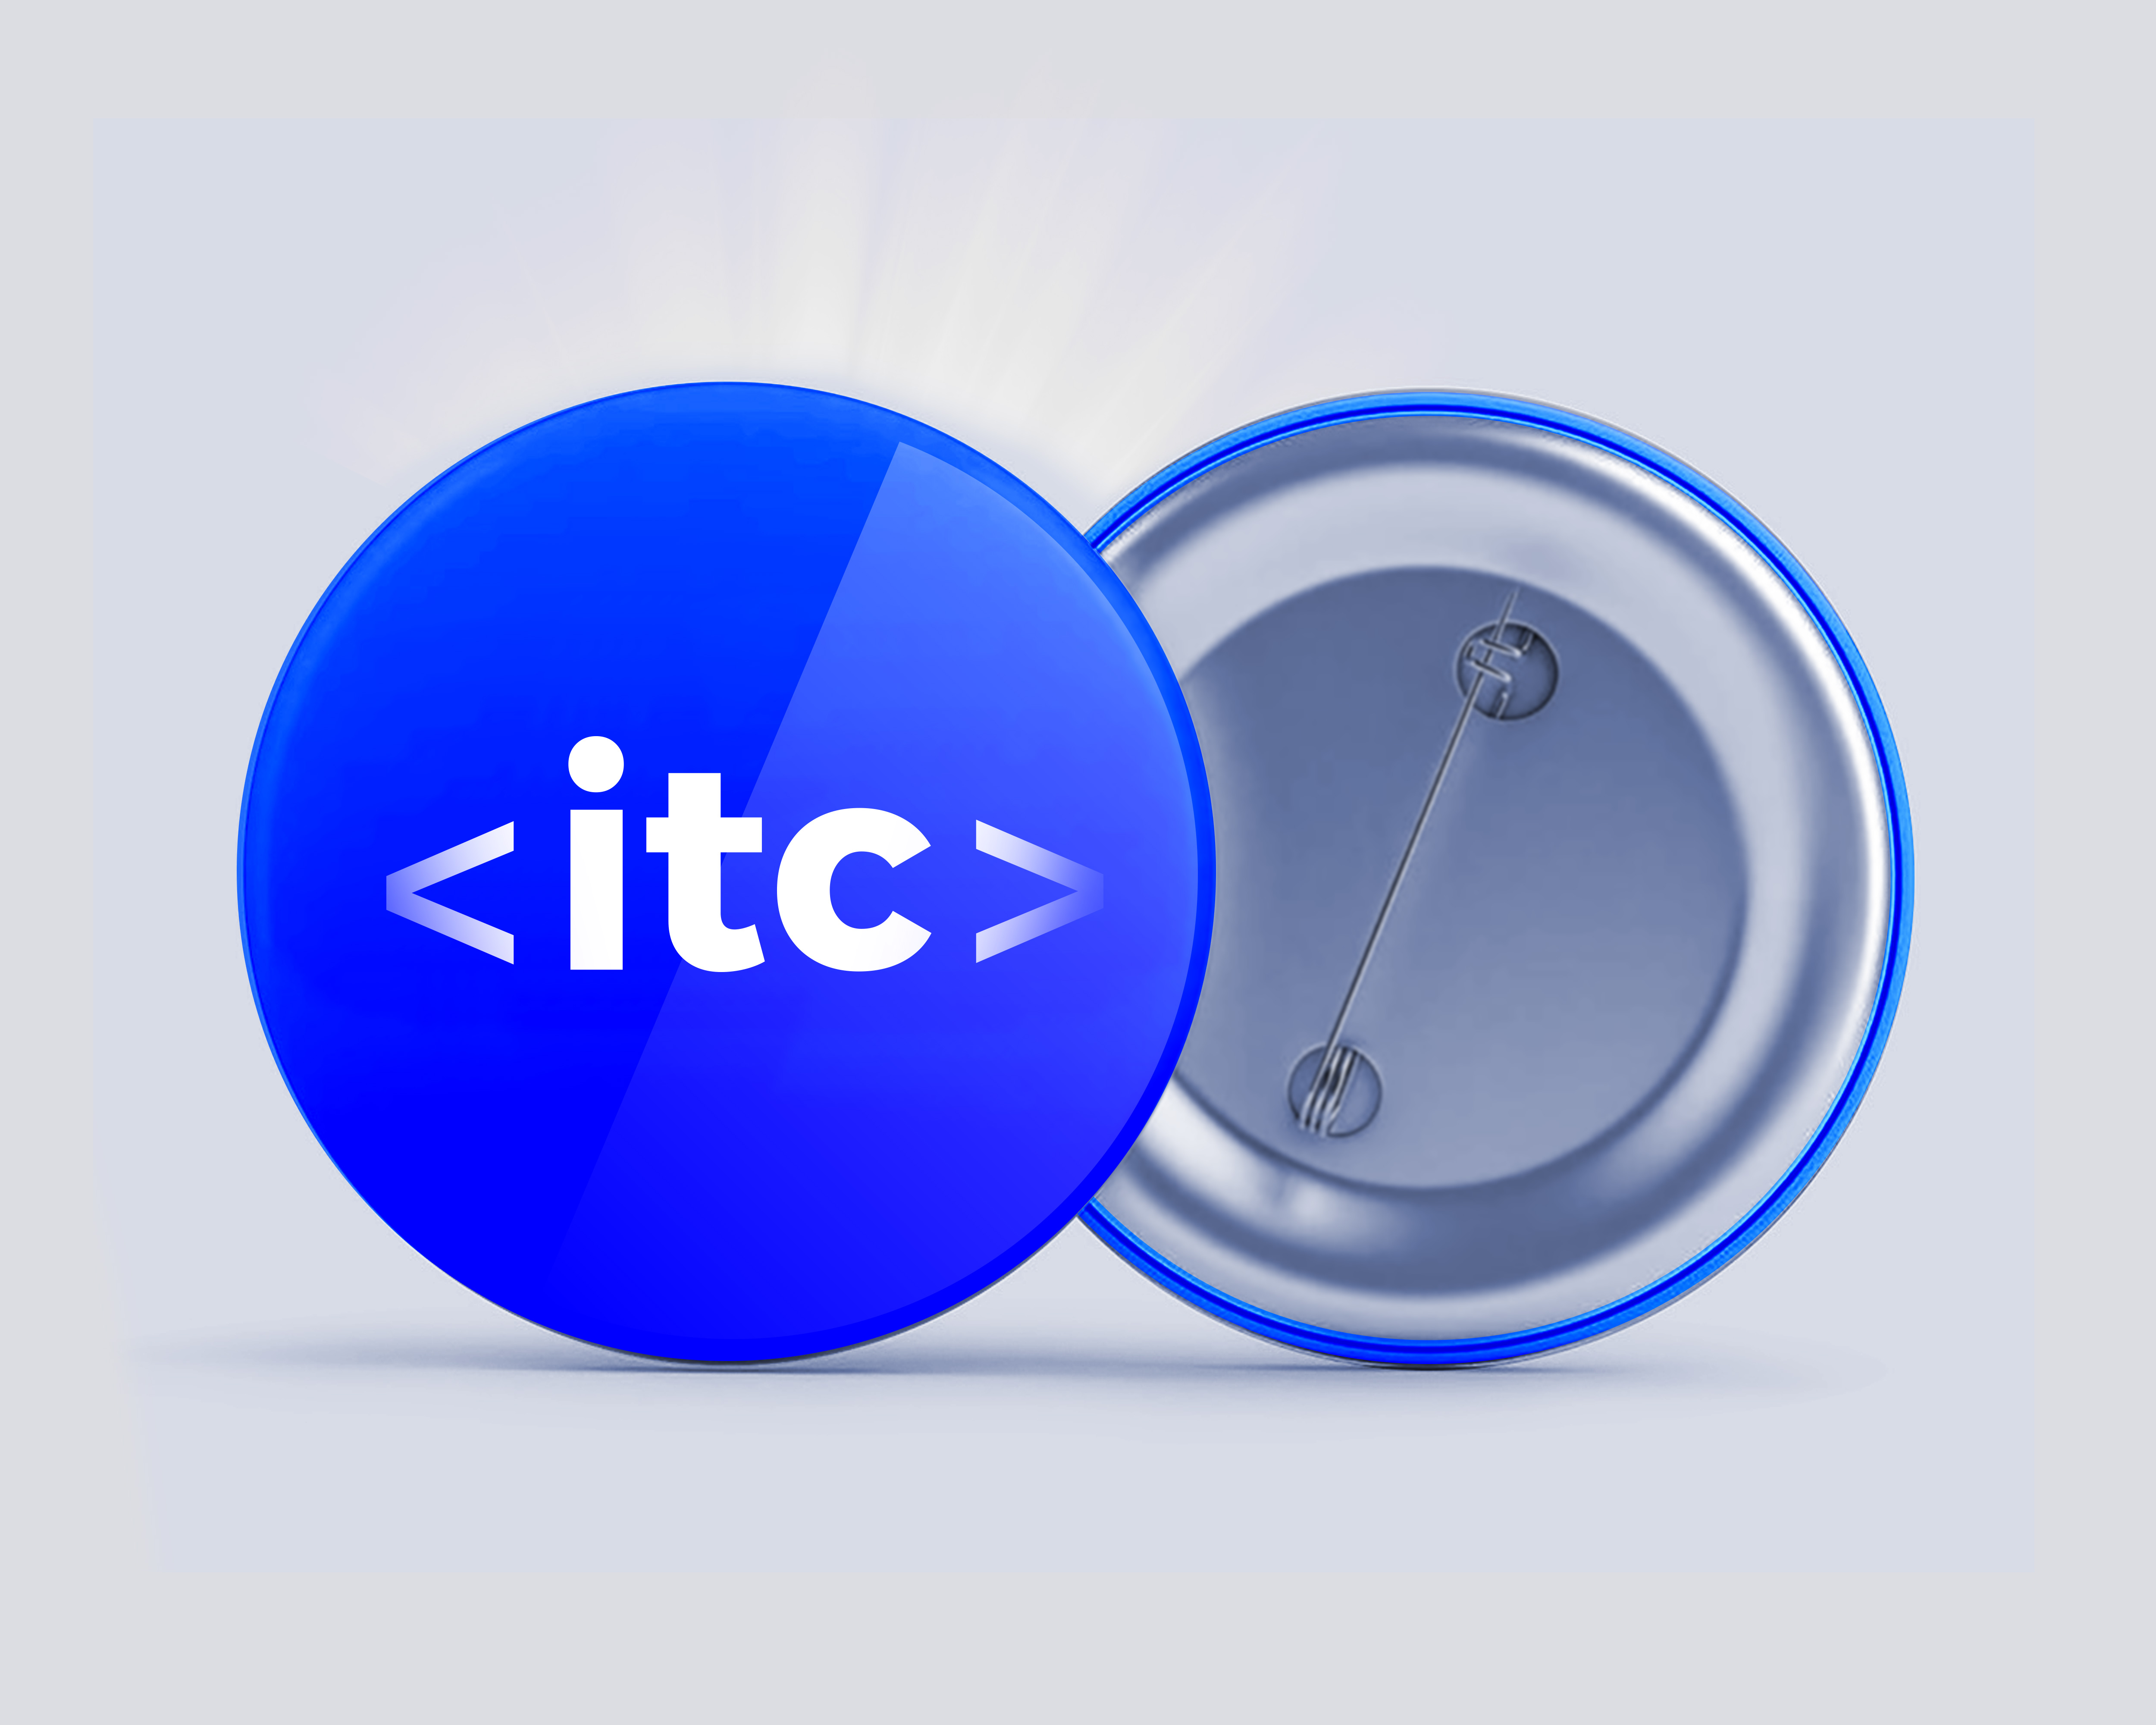 ITC – The Israeli Tech Challenge 